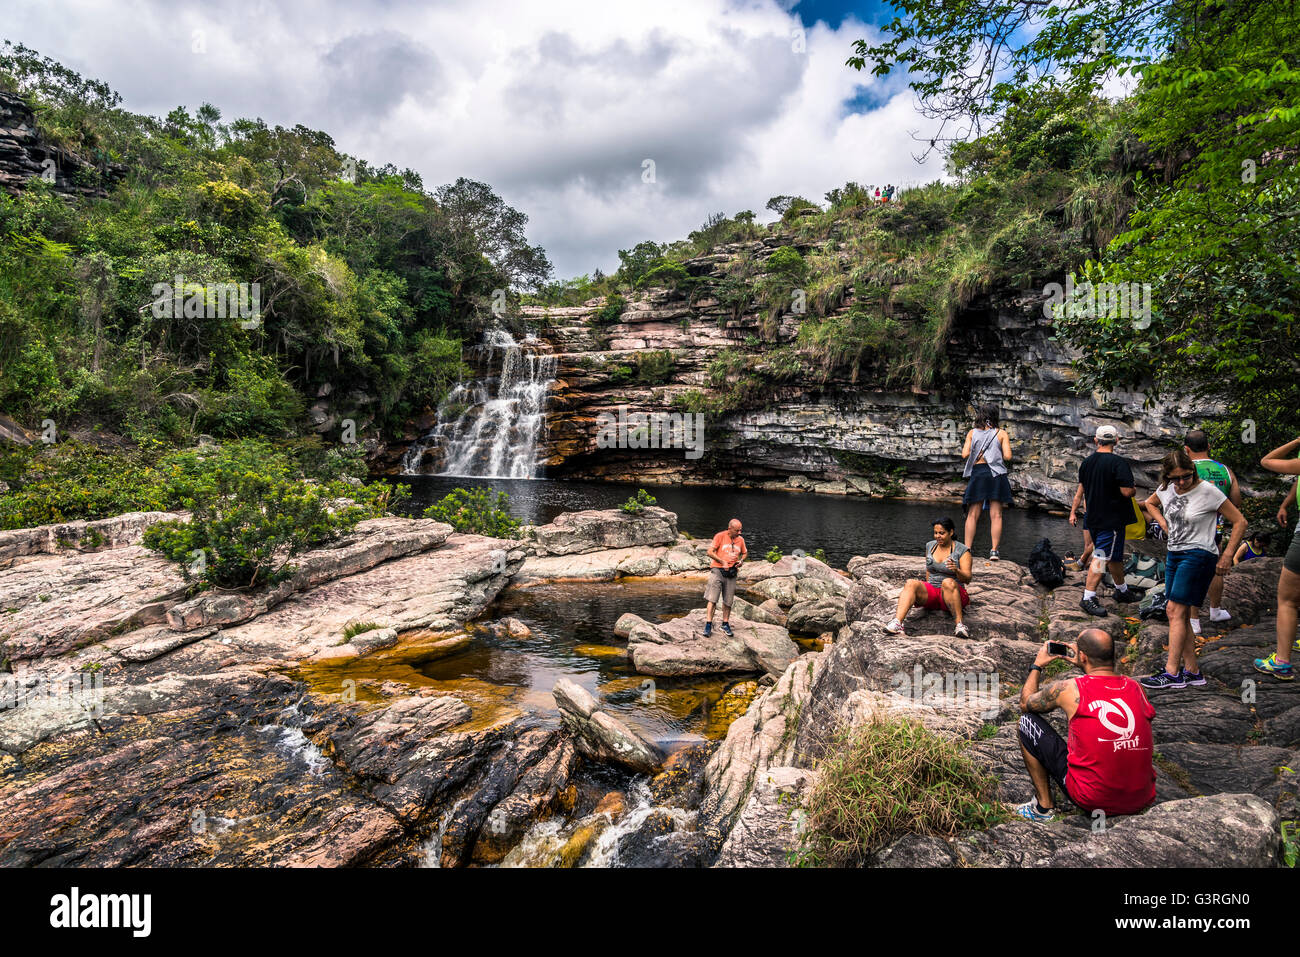 Poço do Diabo cascade et rivière Mucugezinho, Chapada Diamantina, Bahia, Brésil Banque D'Images